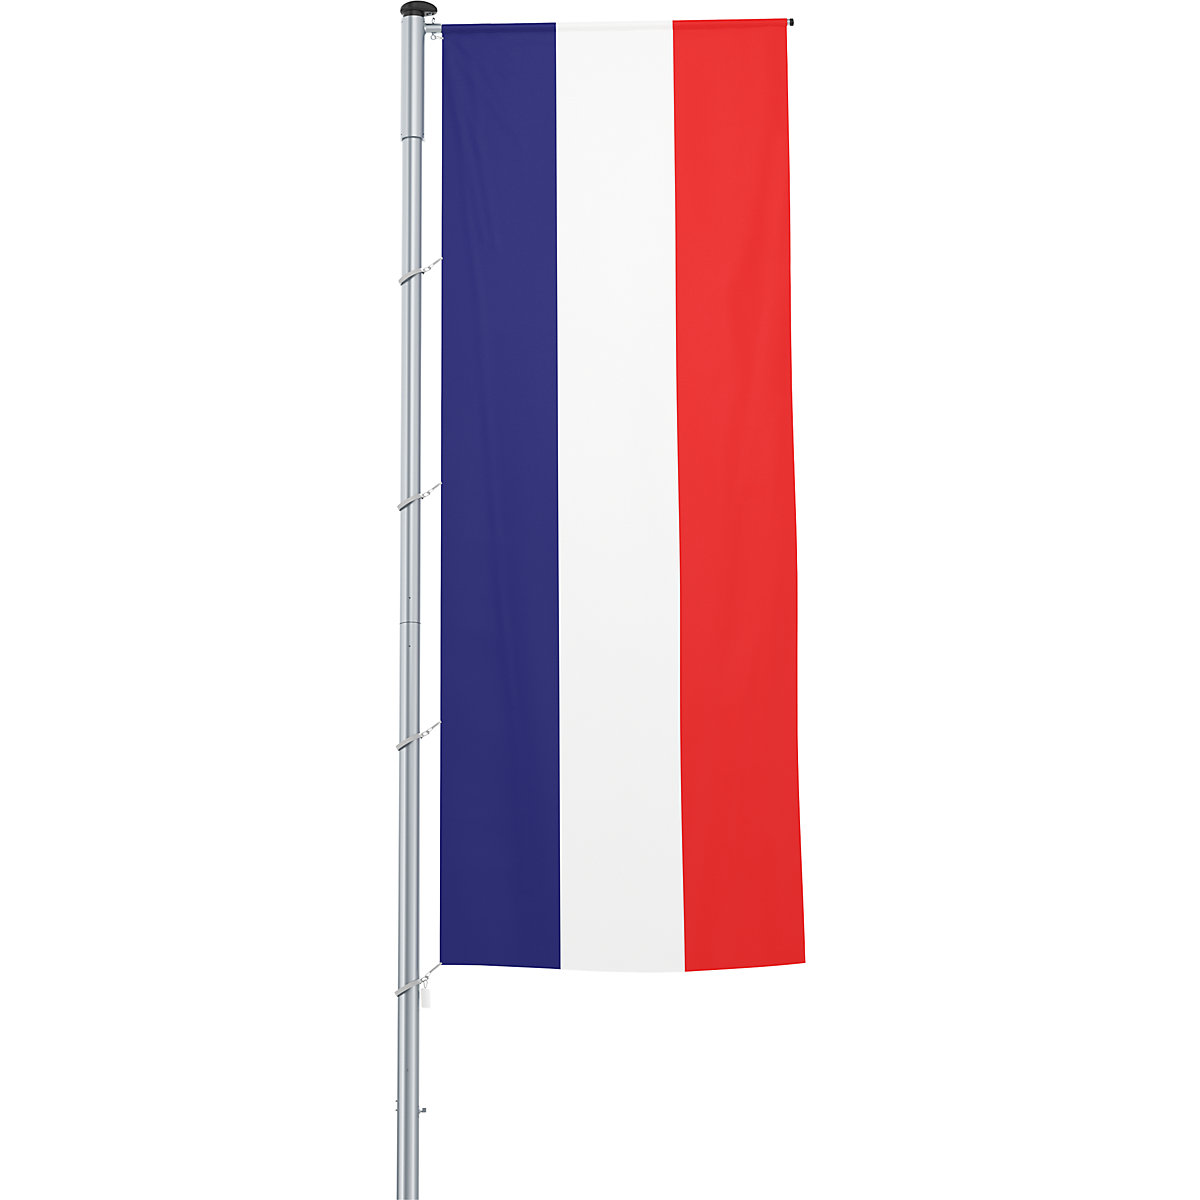 Mannus – Bandera con pluma/bandera del país, formato 1,2 x 3 m, Francia